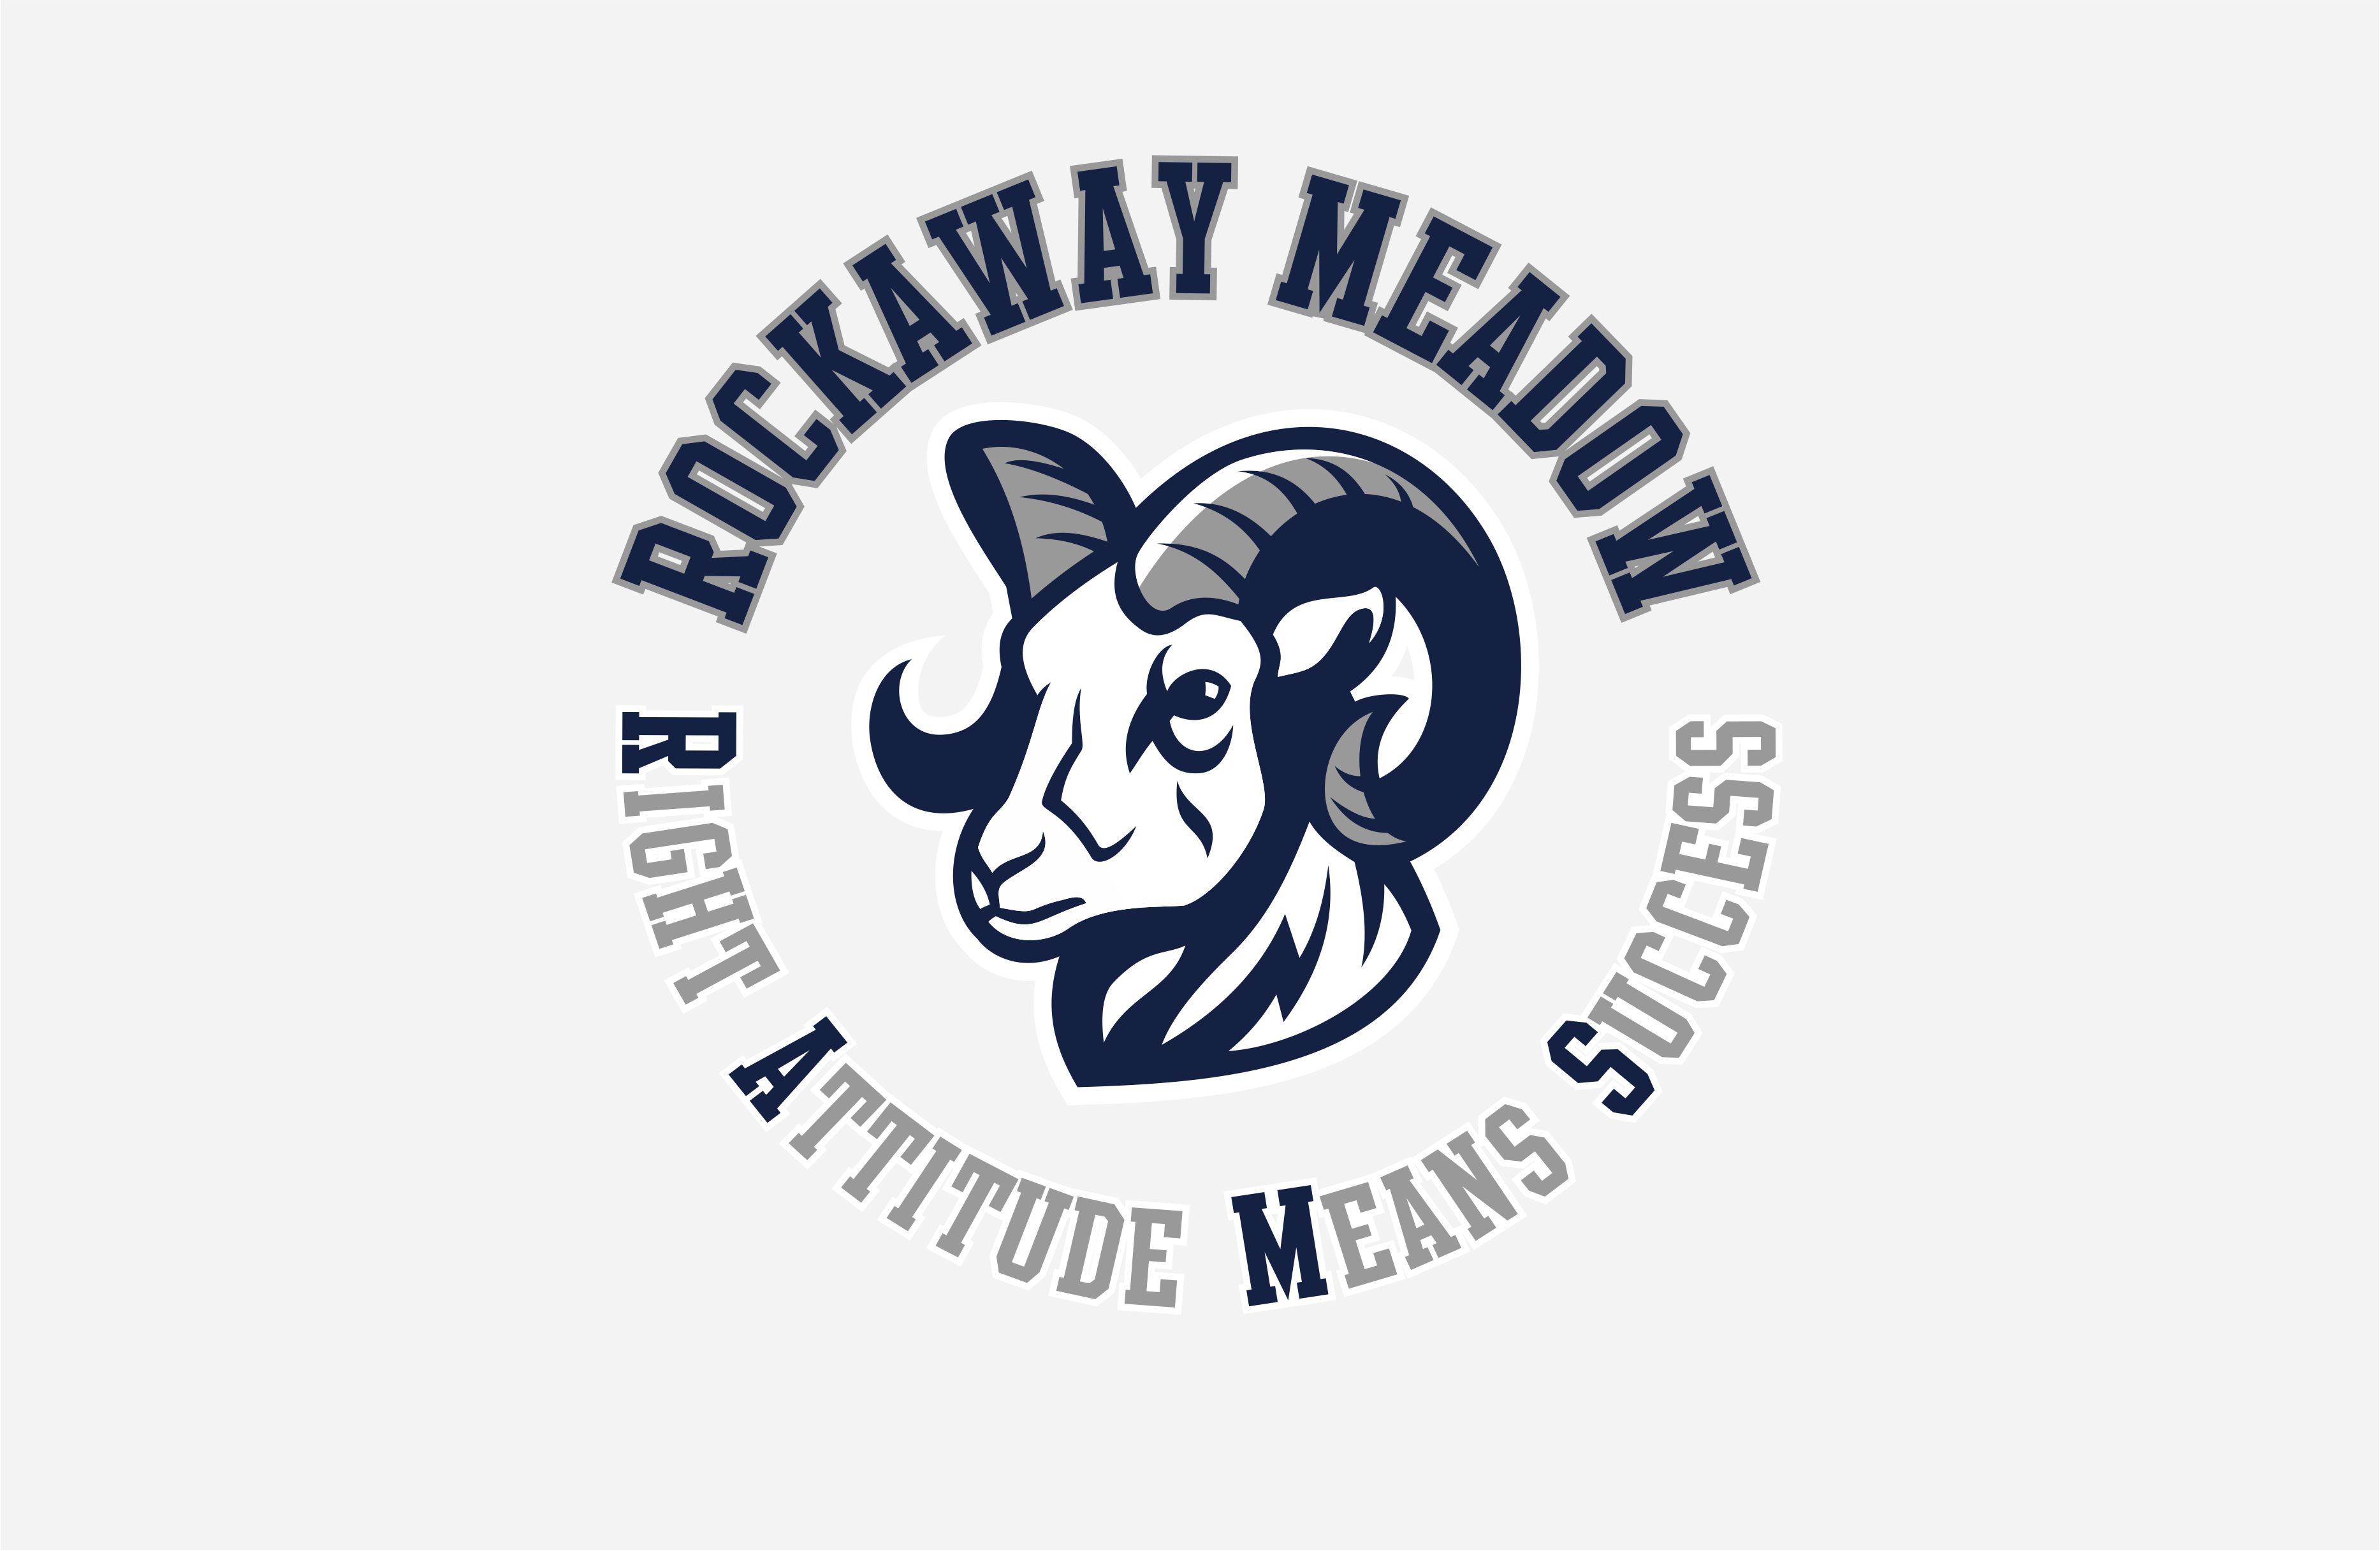 Rockaway Meadow School